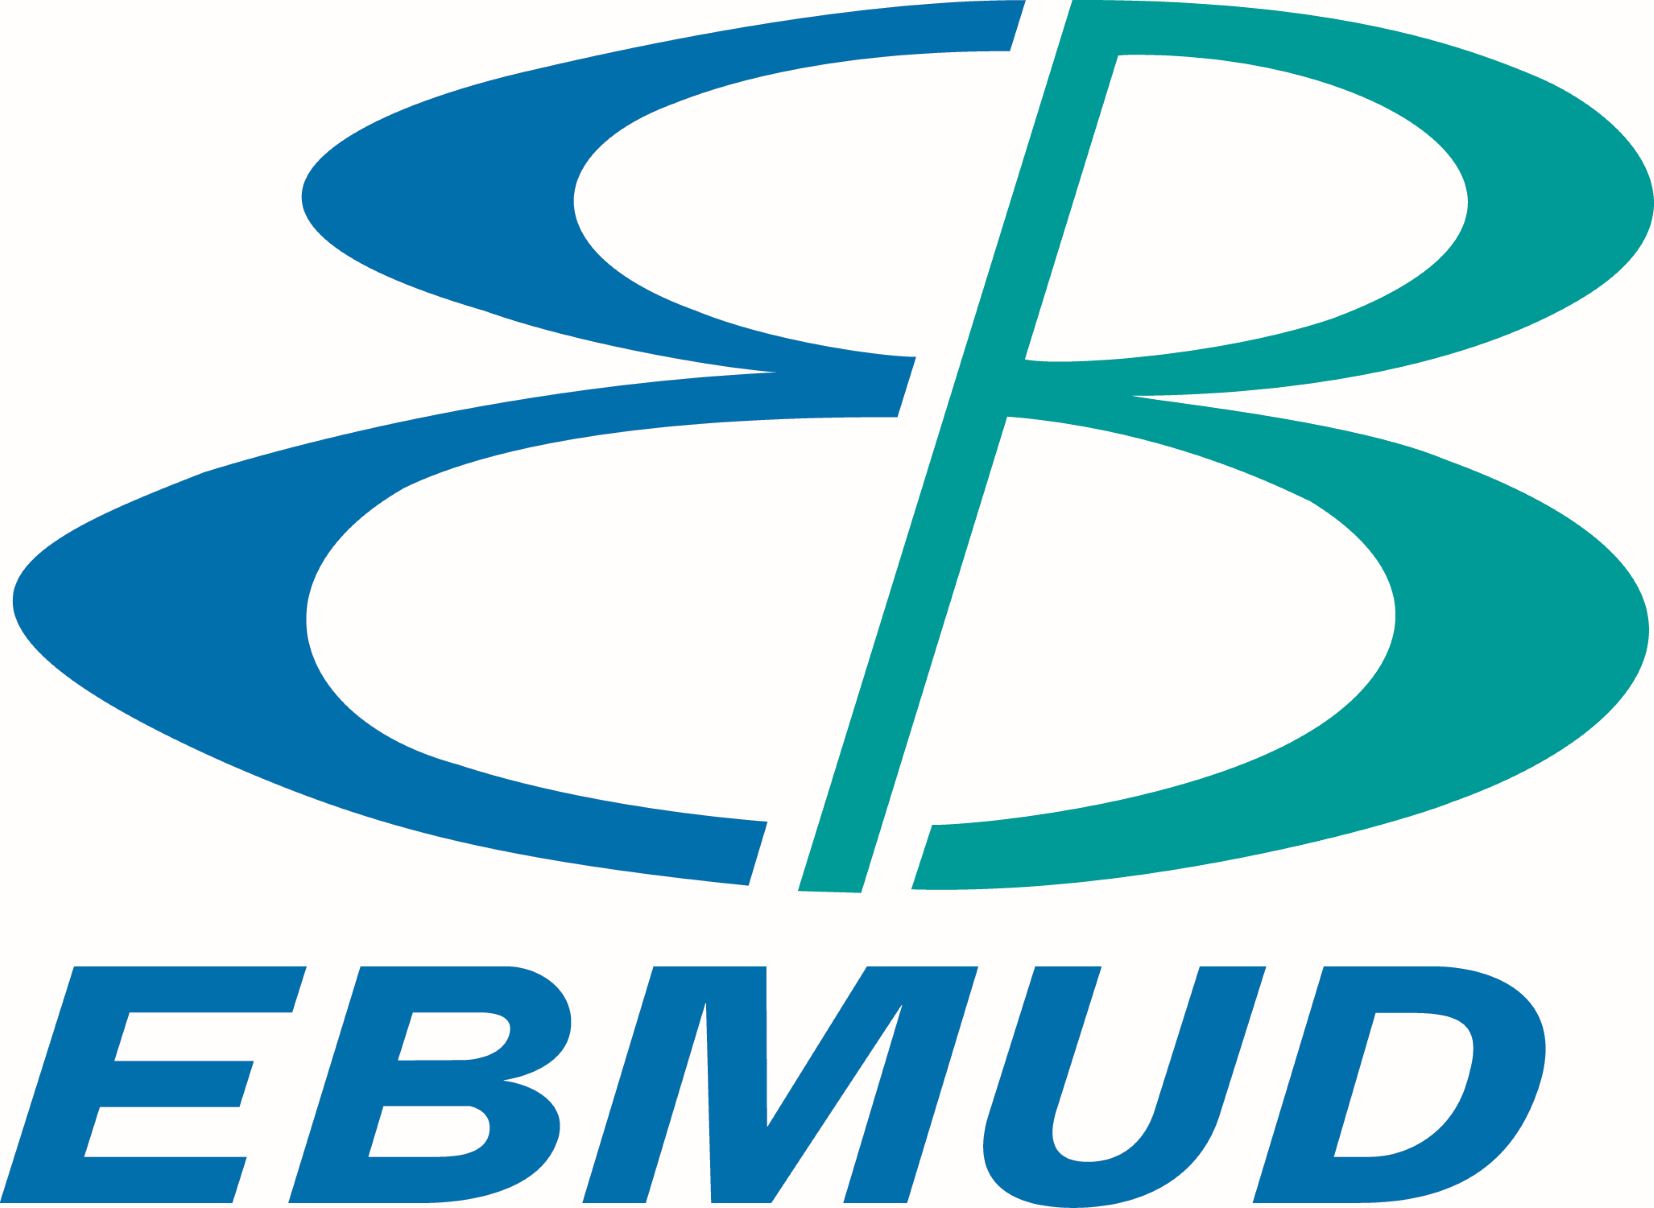 EBMUD Logo